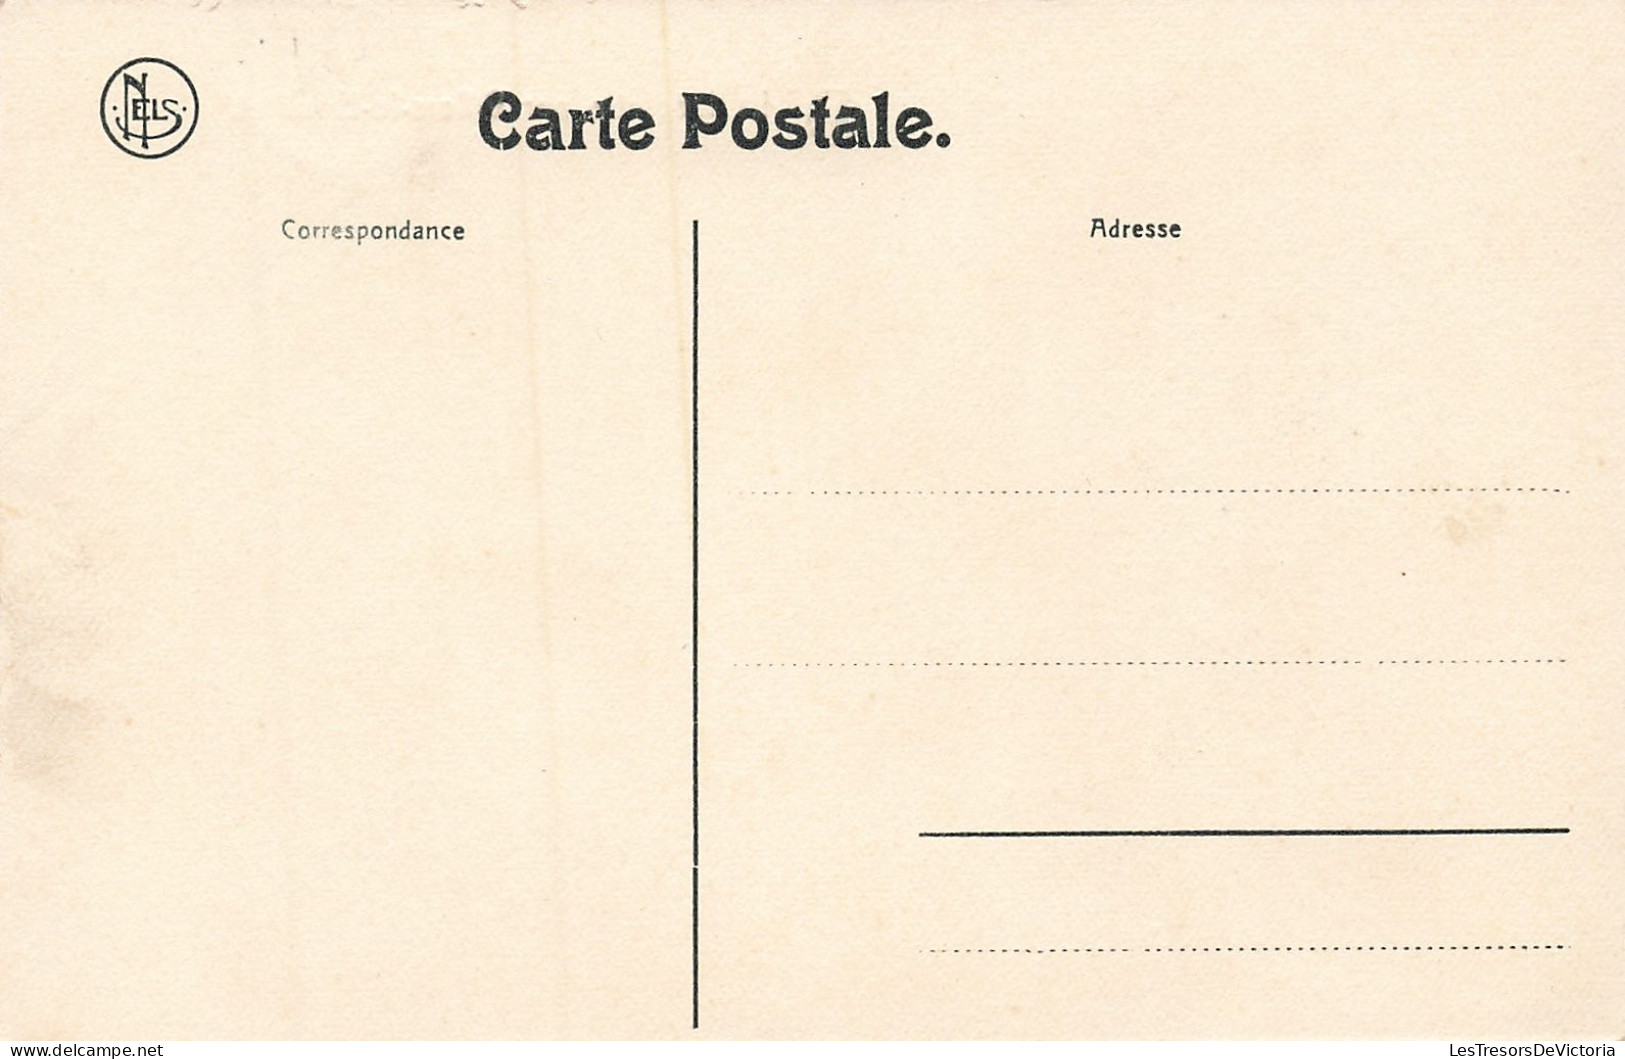 Belgique - La Béolette De Villers Le Bouillet - Edit. Nels  - Carte Postale Ancienne - Huy